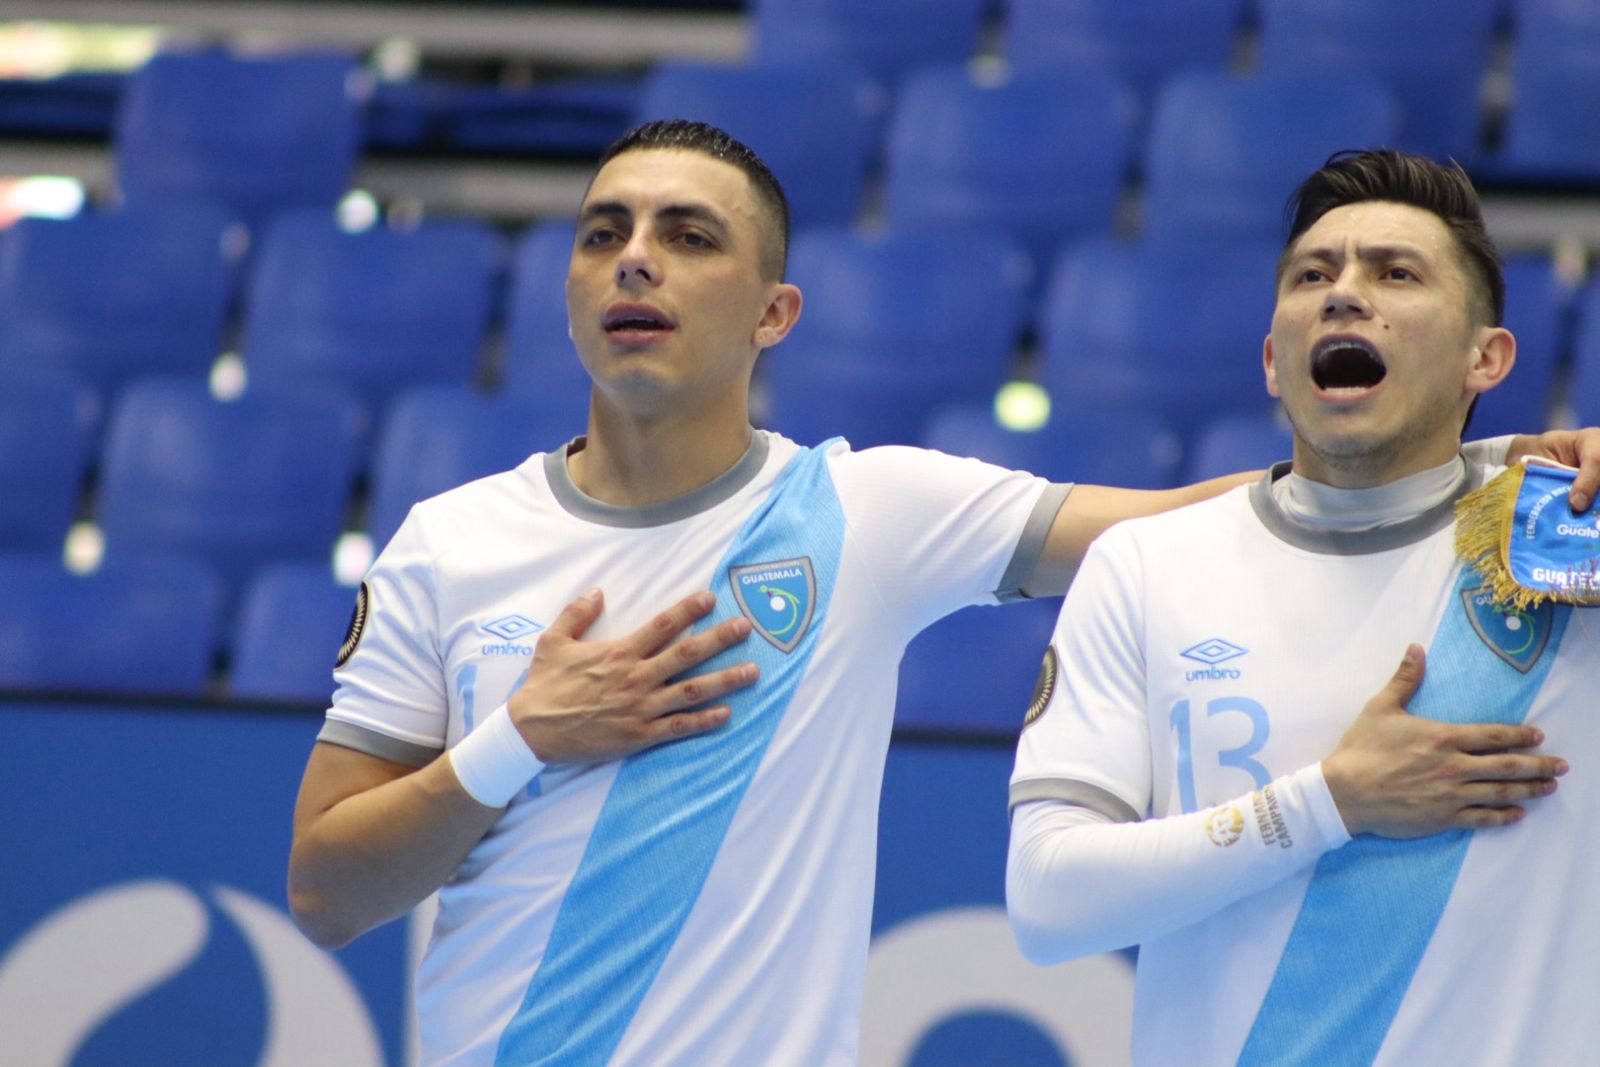 Alan Aguilar y Fernando Campaignac cantan el himno nacional previo a un duelo de futsal con la Selección de Guatemala.